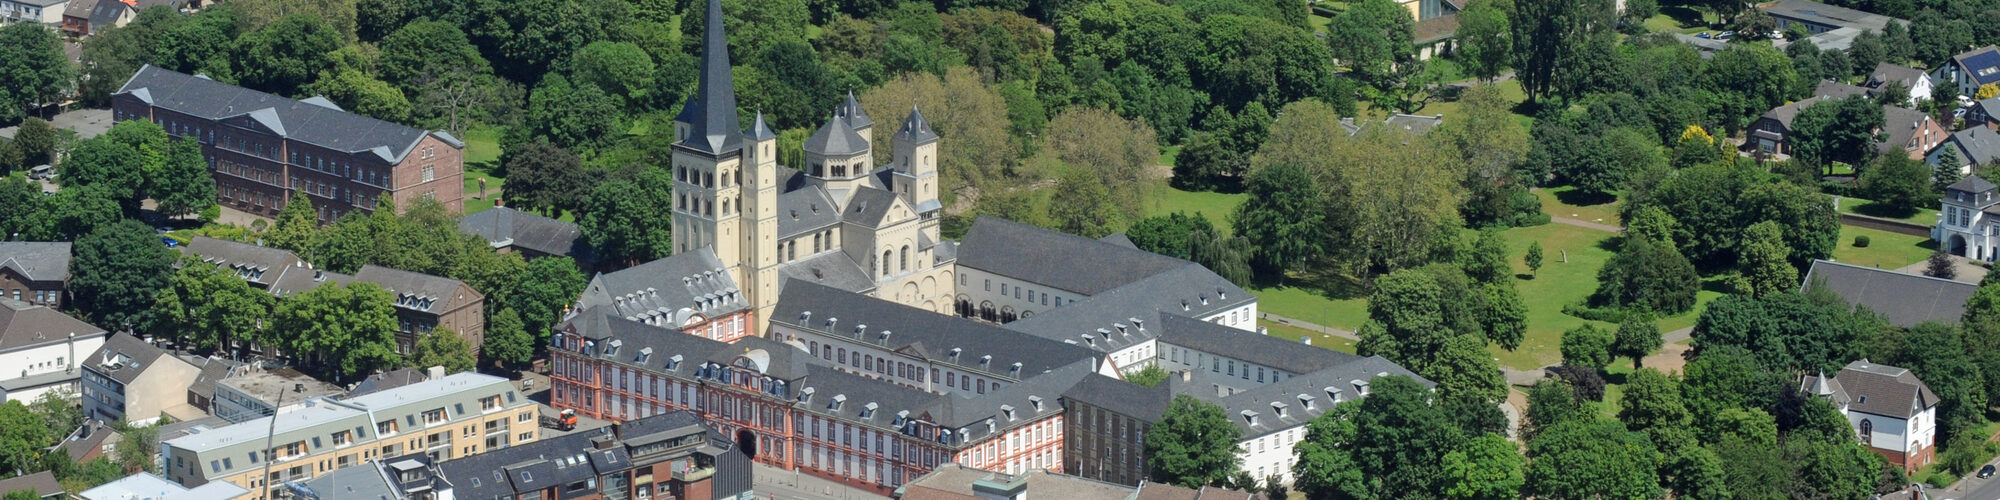 Luftbild Abtei Brauweiler